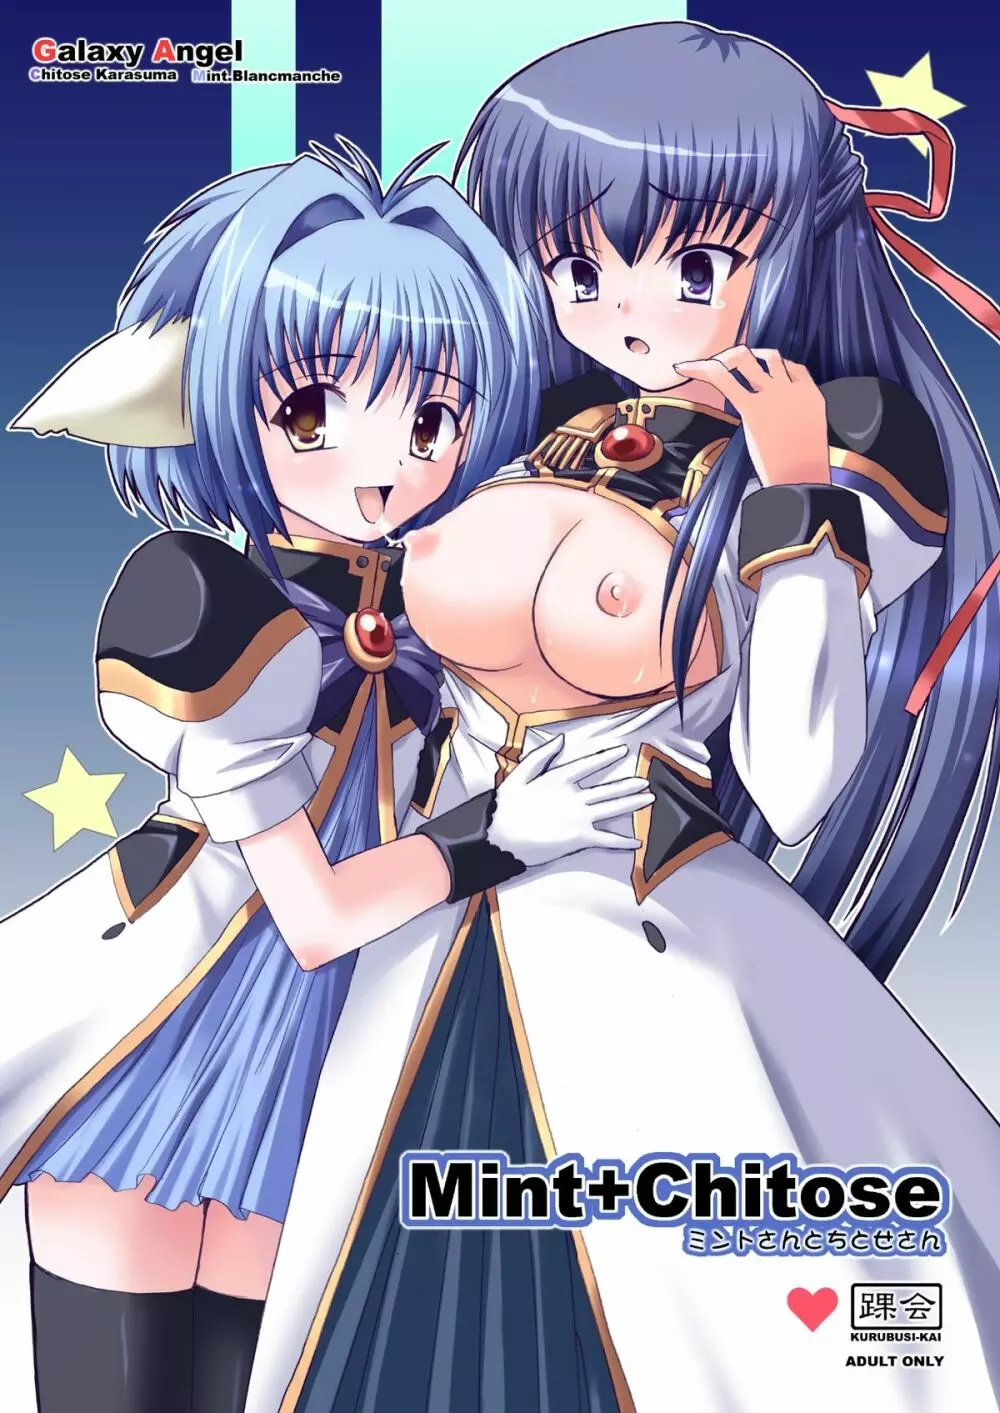 Mint+Chitose